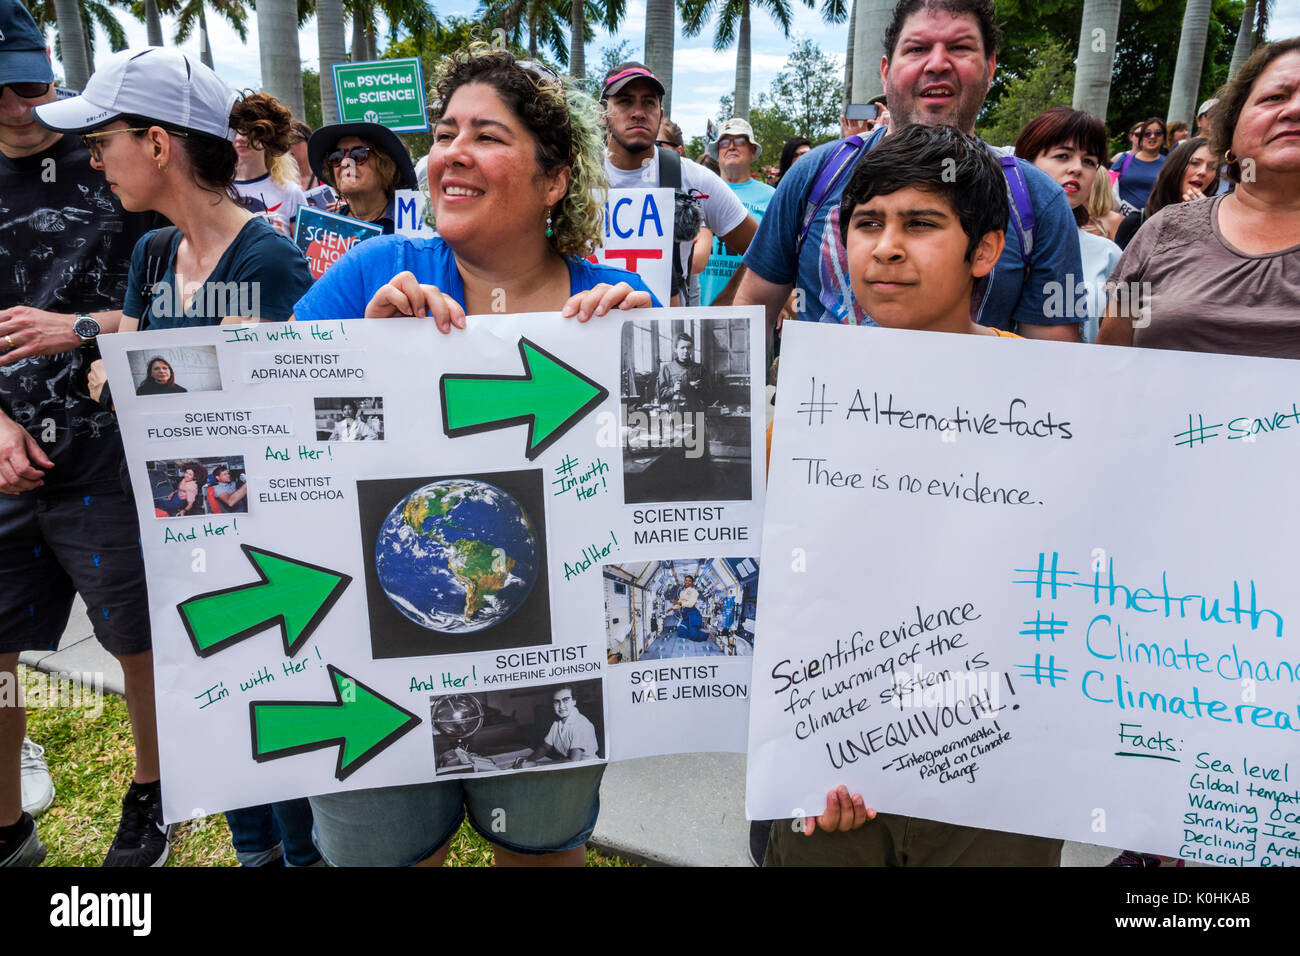 Miami Florida,Museum Park,March for Science,protesta,rally,segno,poster,protesto,ispanico Latino etnia immigrati minoritari minoranza,madre mamma, Foto Stock